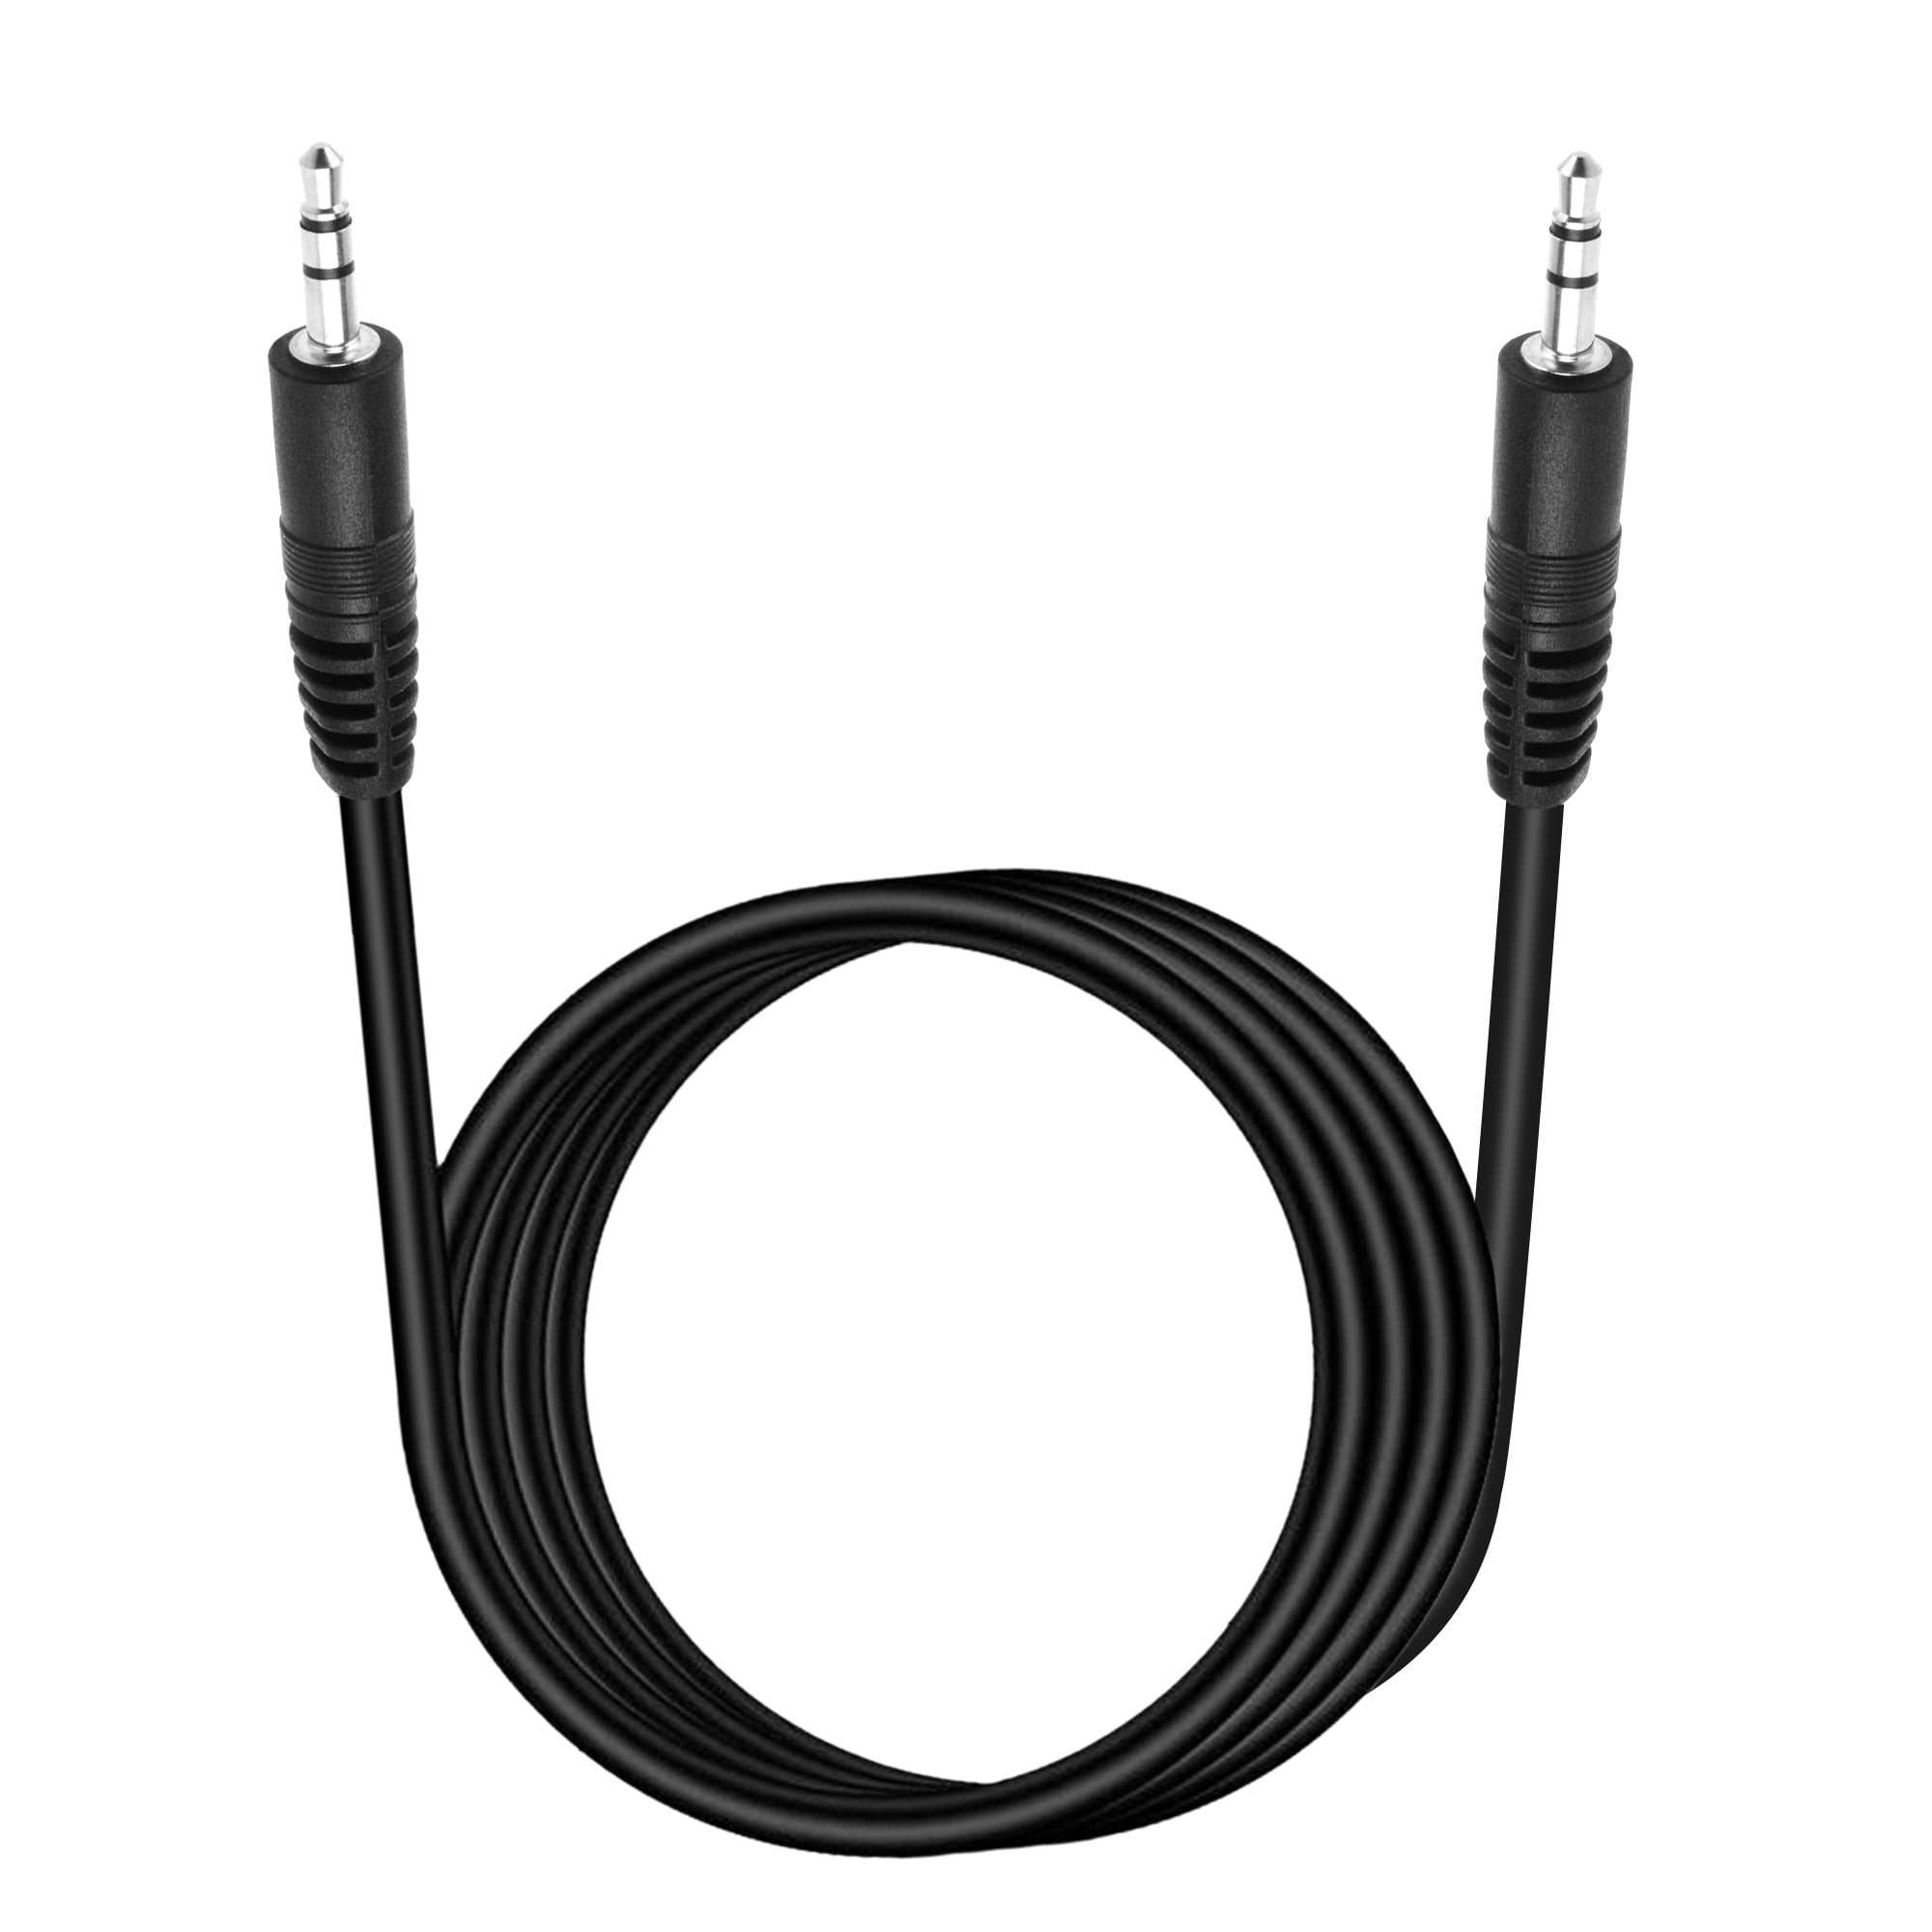 K-MAINS 6ft 3.5mm Audio Cable Lead AUX Cord Replacement for Google Chromecast Audio Rux-J42" - Walmart.com